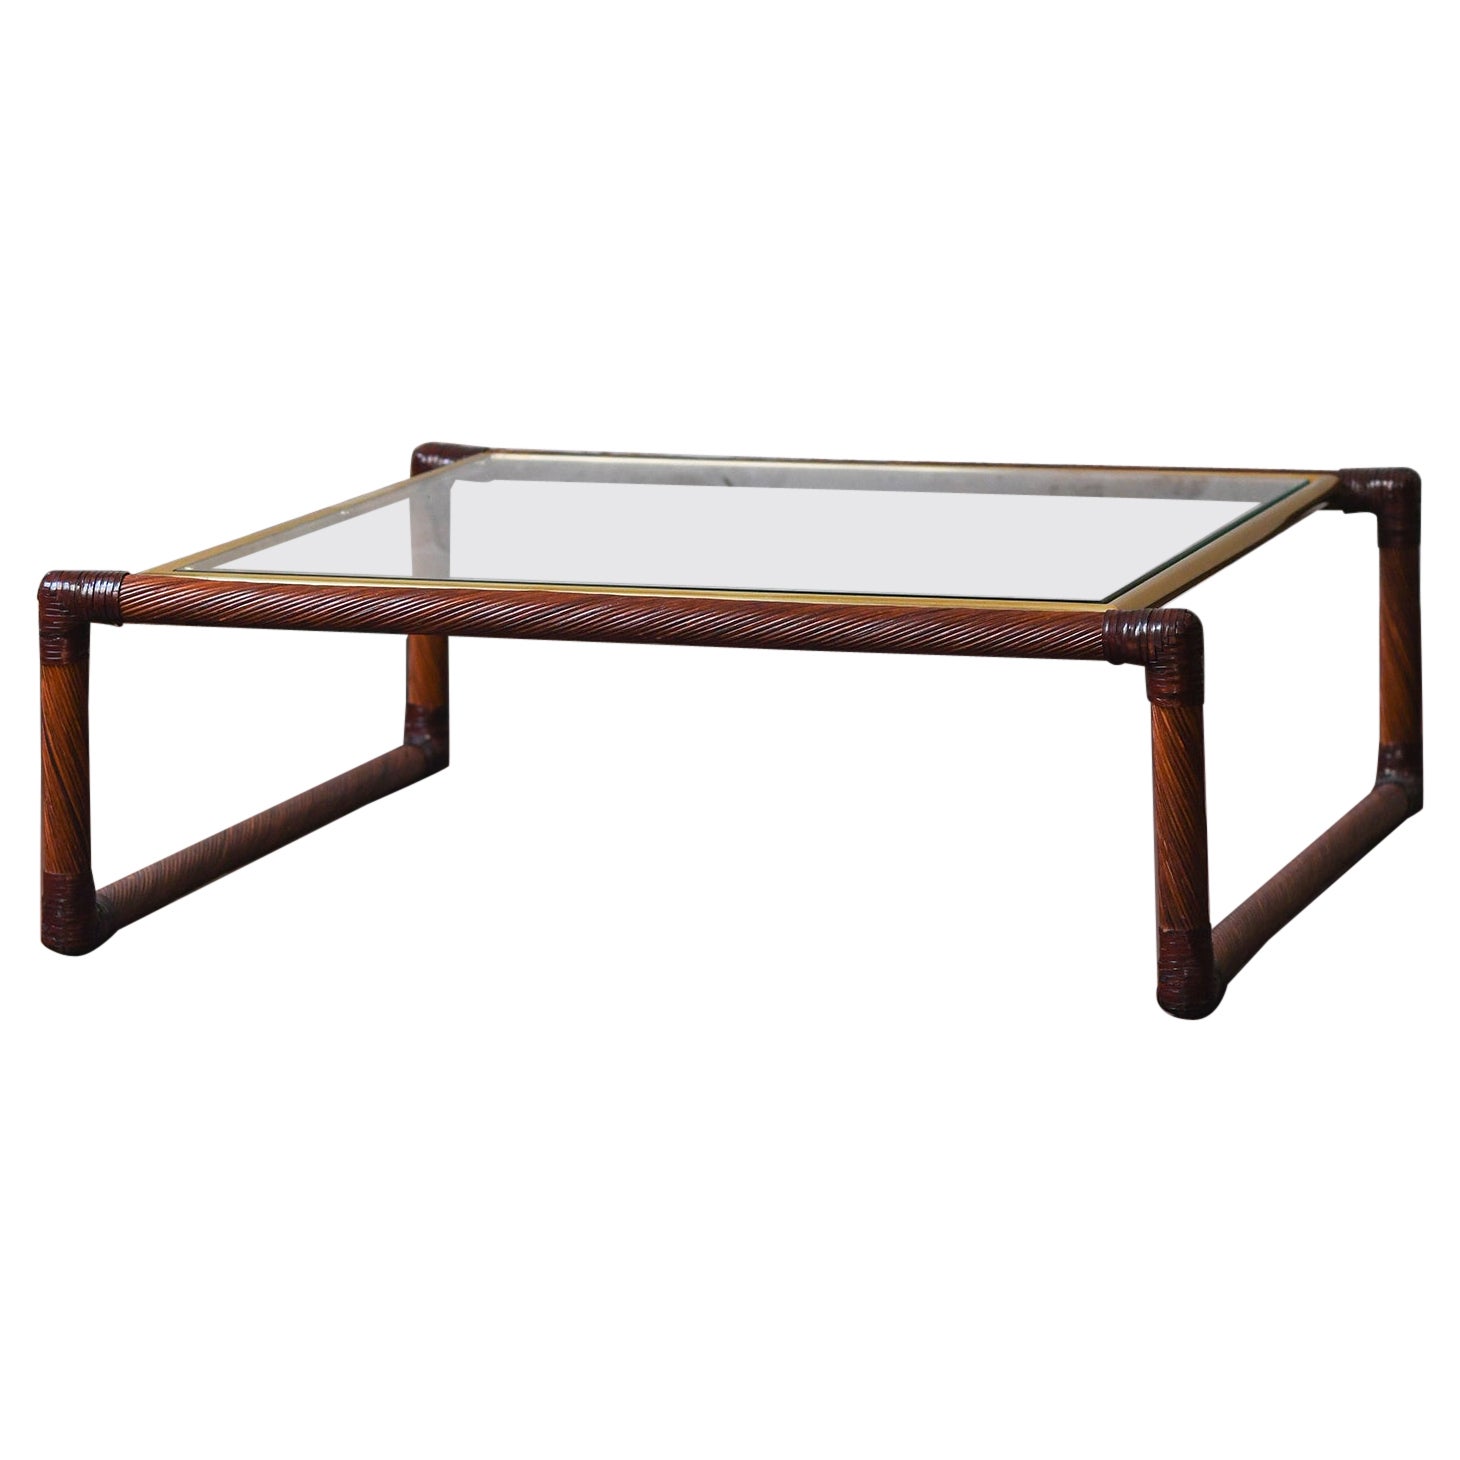 Table basse en rotin avec reliures en cuir, détails en laiton et plateau en verre, 1970